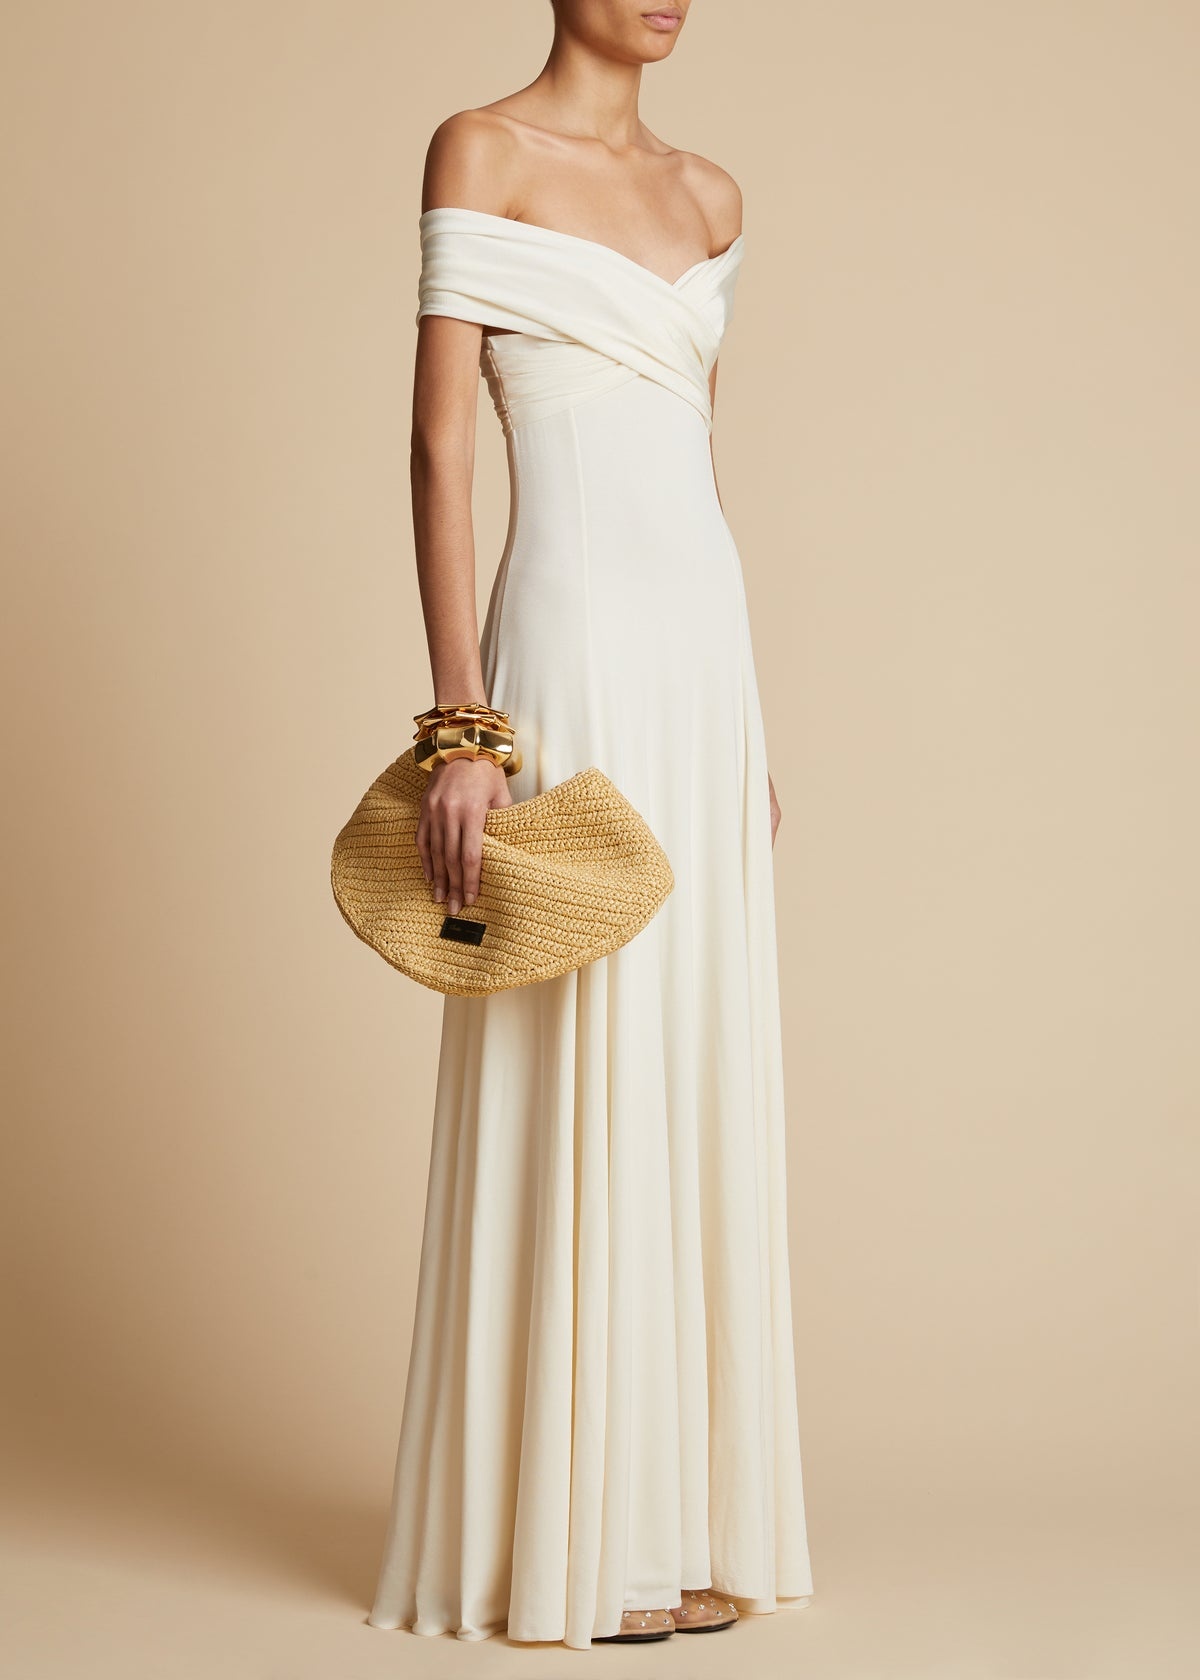 The Bruna Dress in Cream - 2